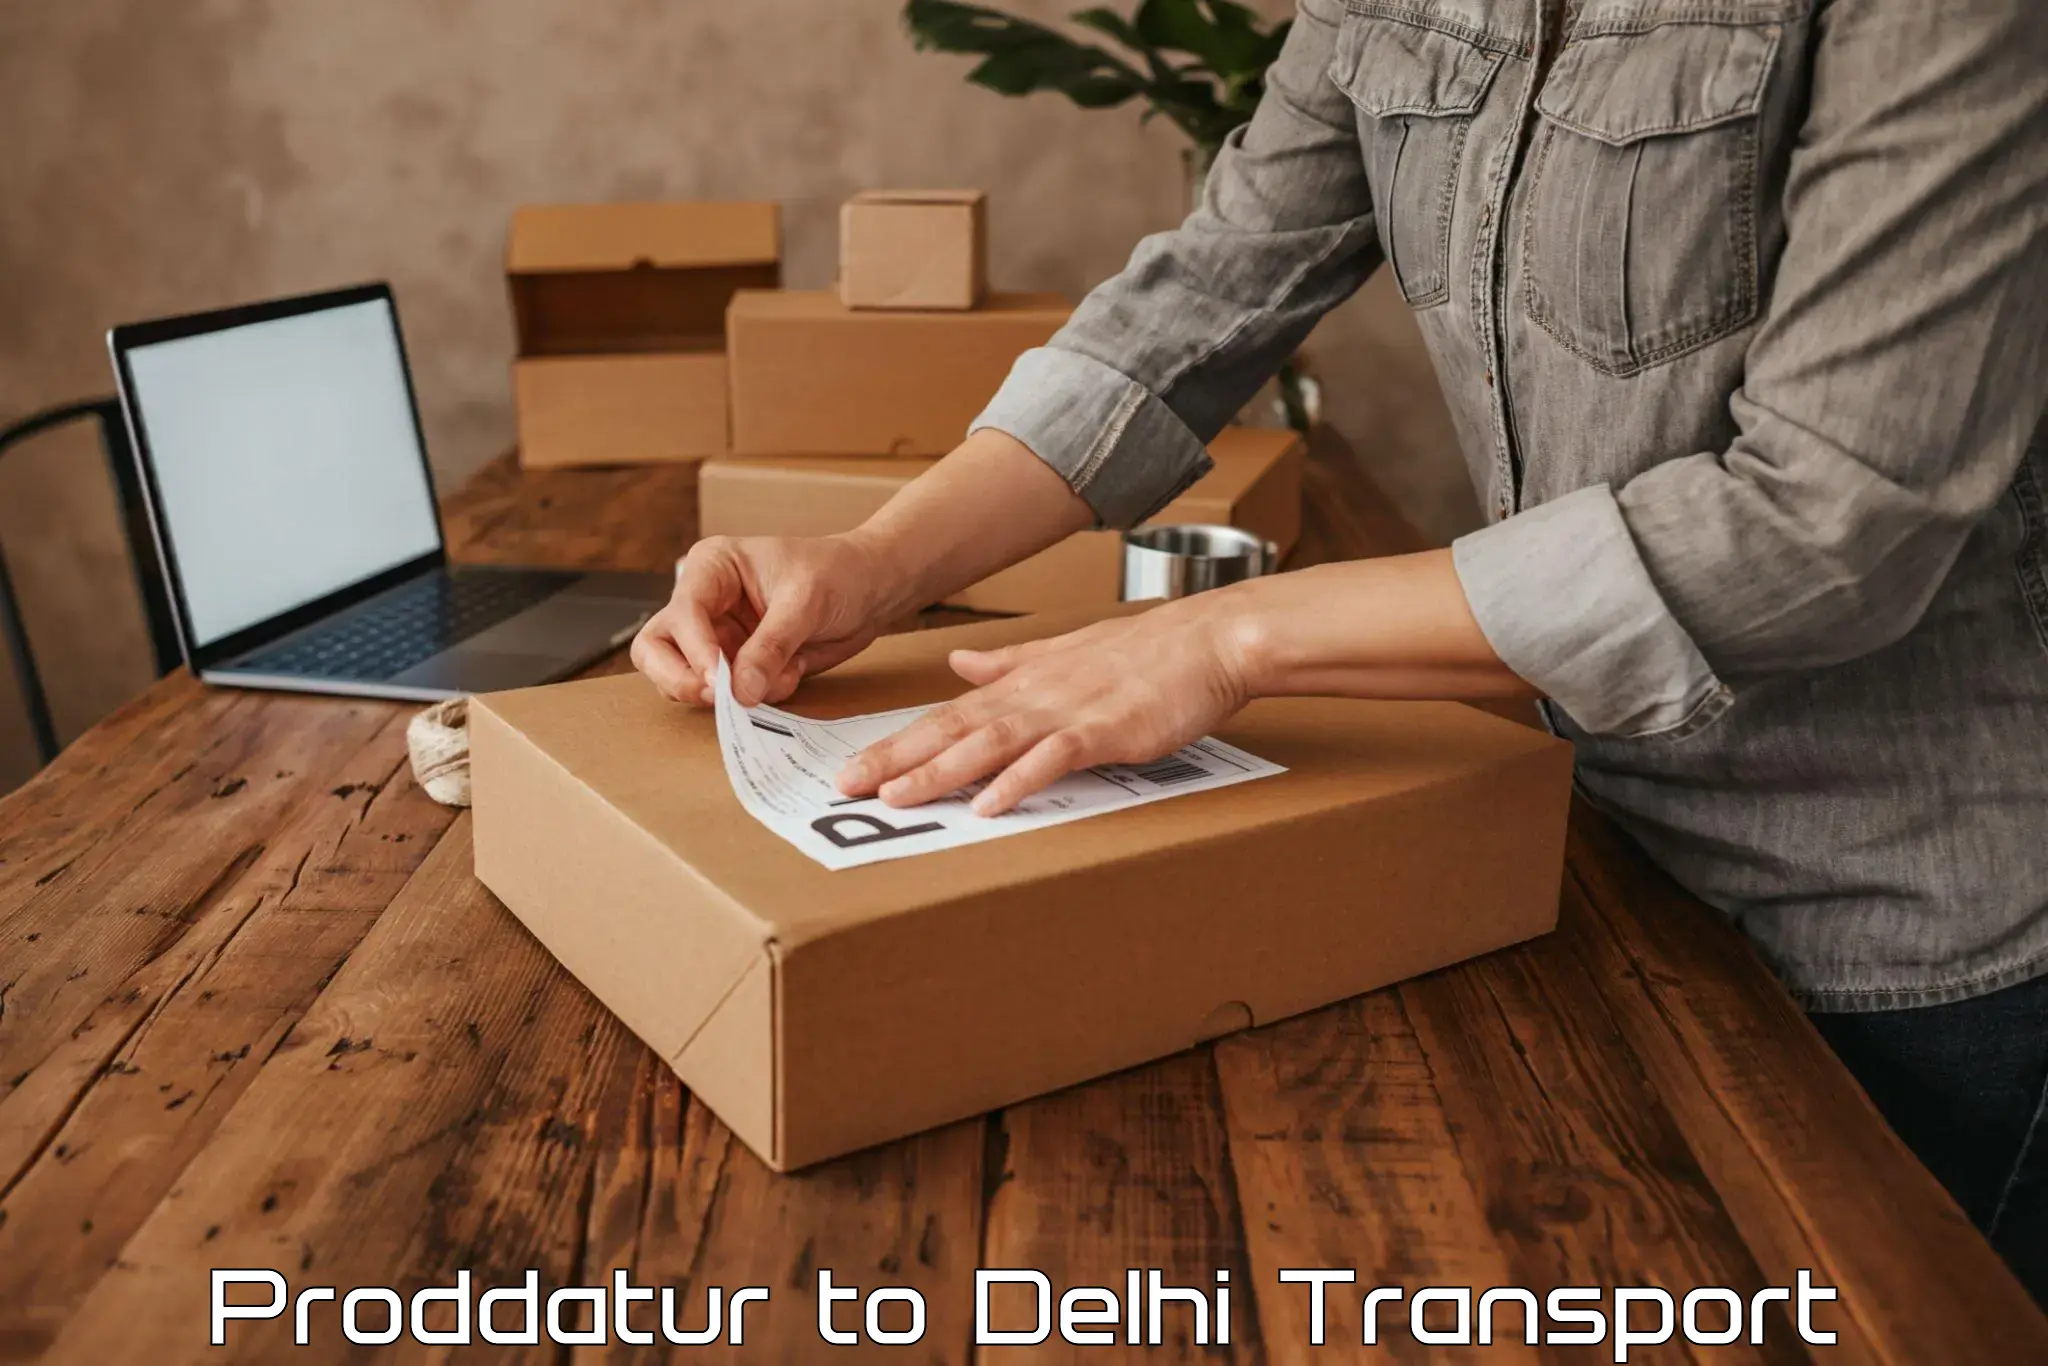 Shipping partner Proddatur to Jamia Hamdard New Delhi